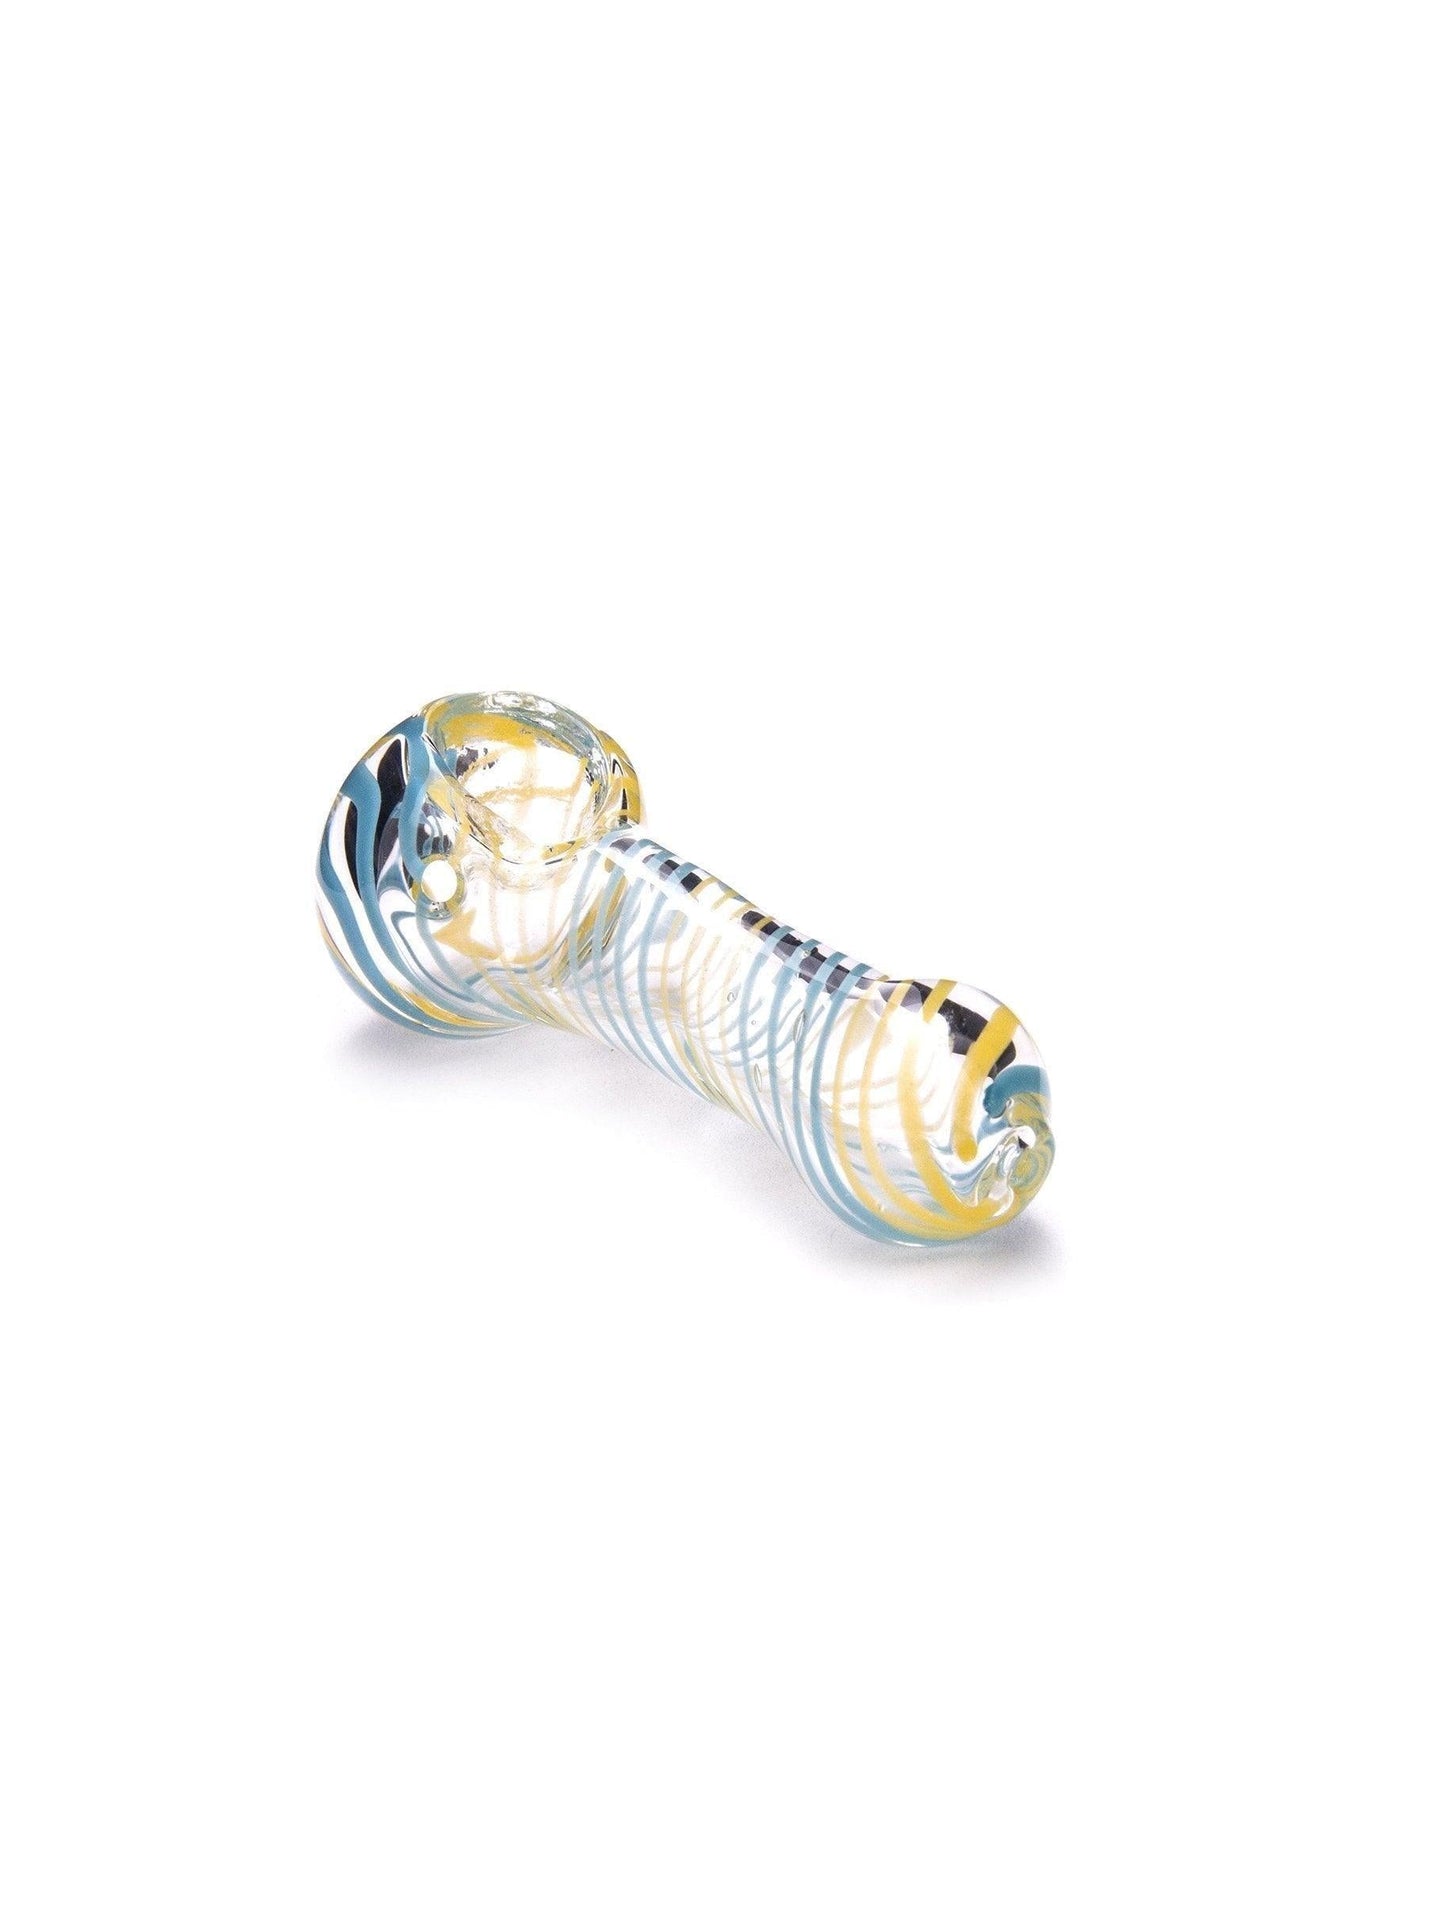 Pipe Glass Small Spoon WGP | Squadafum